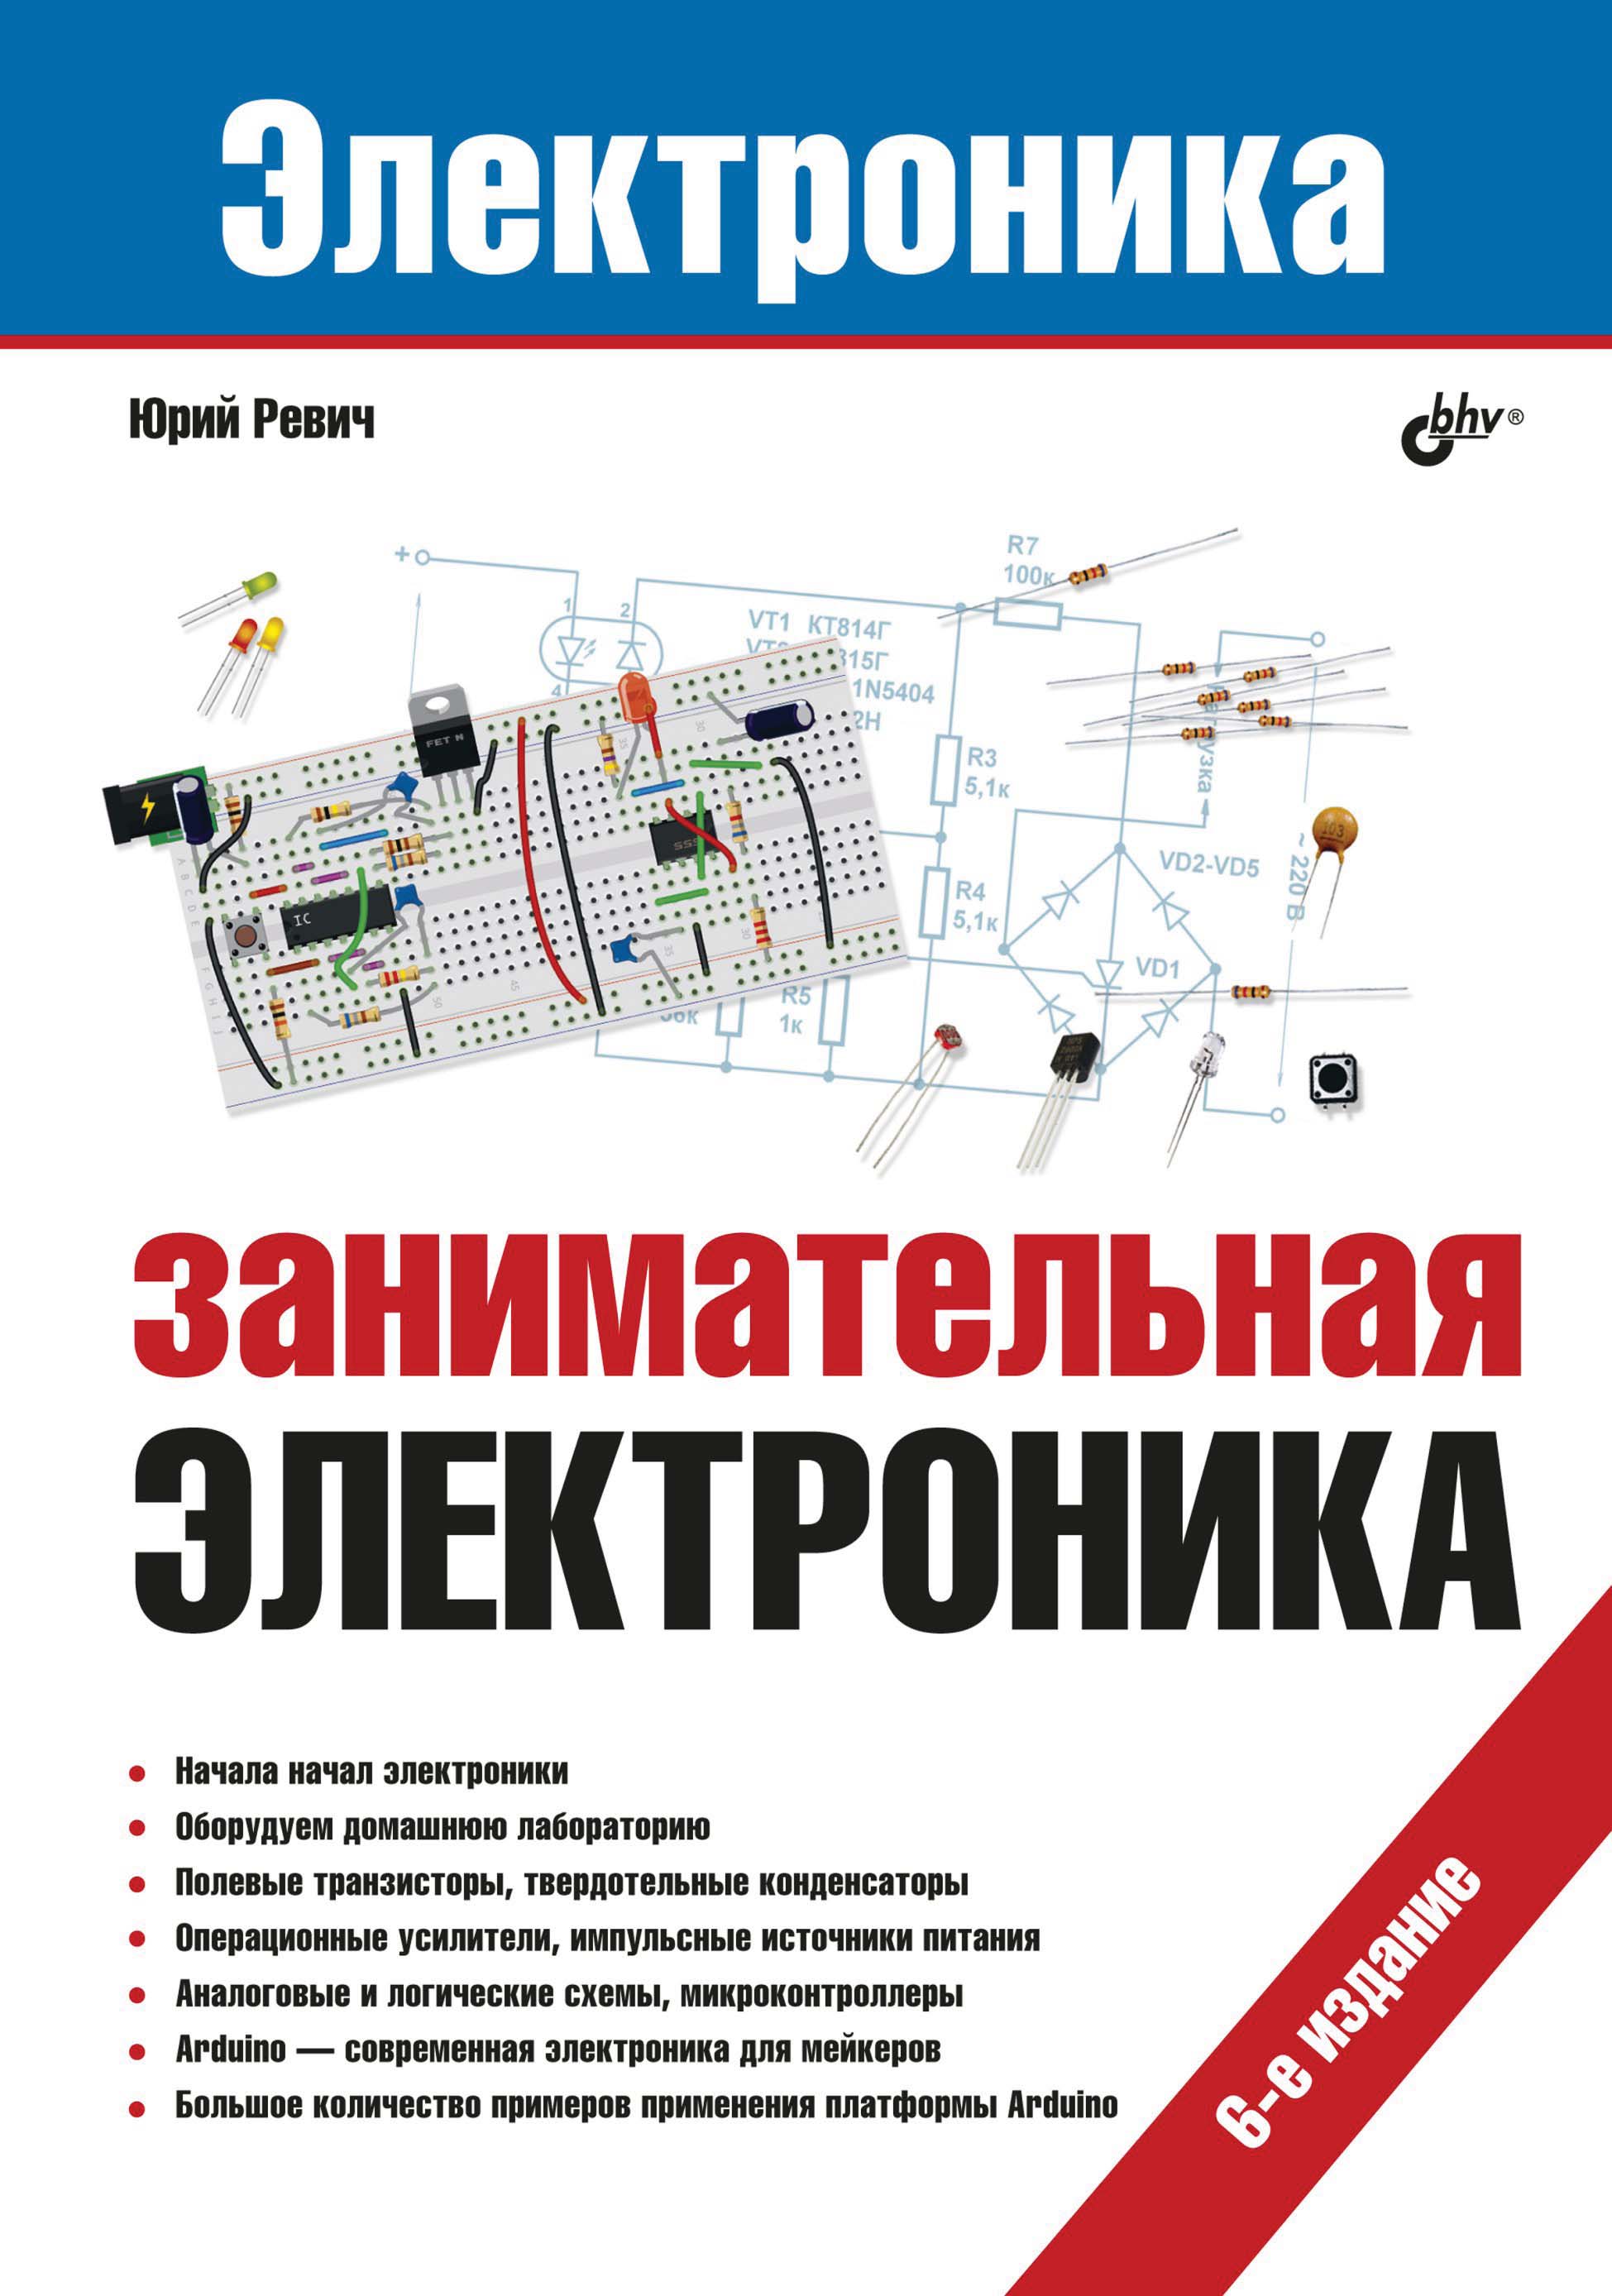 Занимательная электроника (5-е издание)